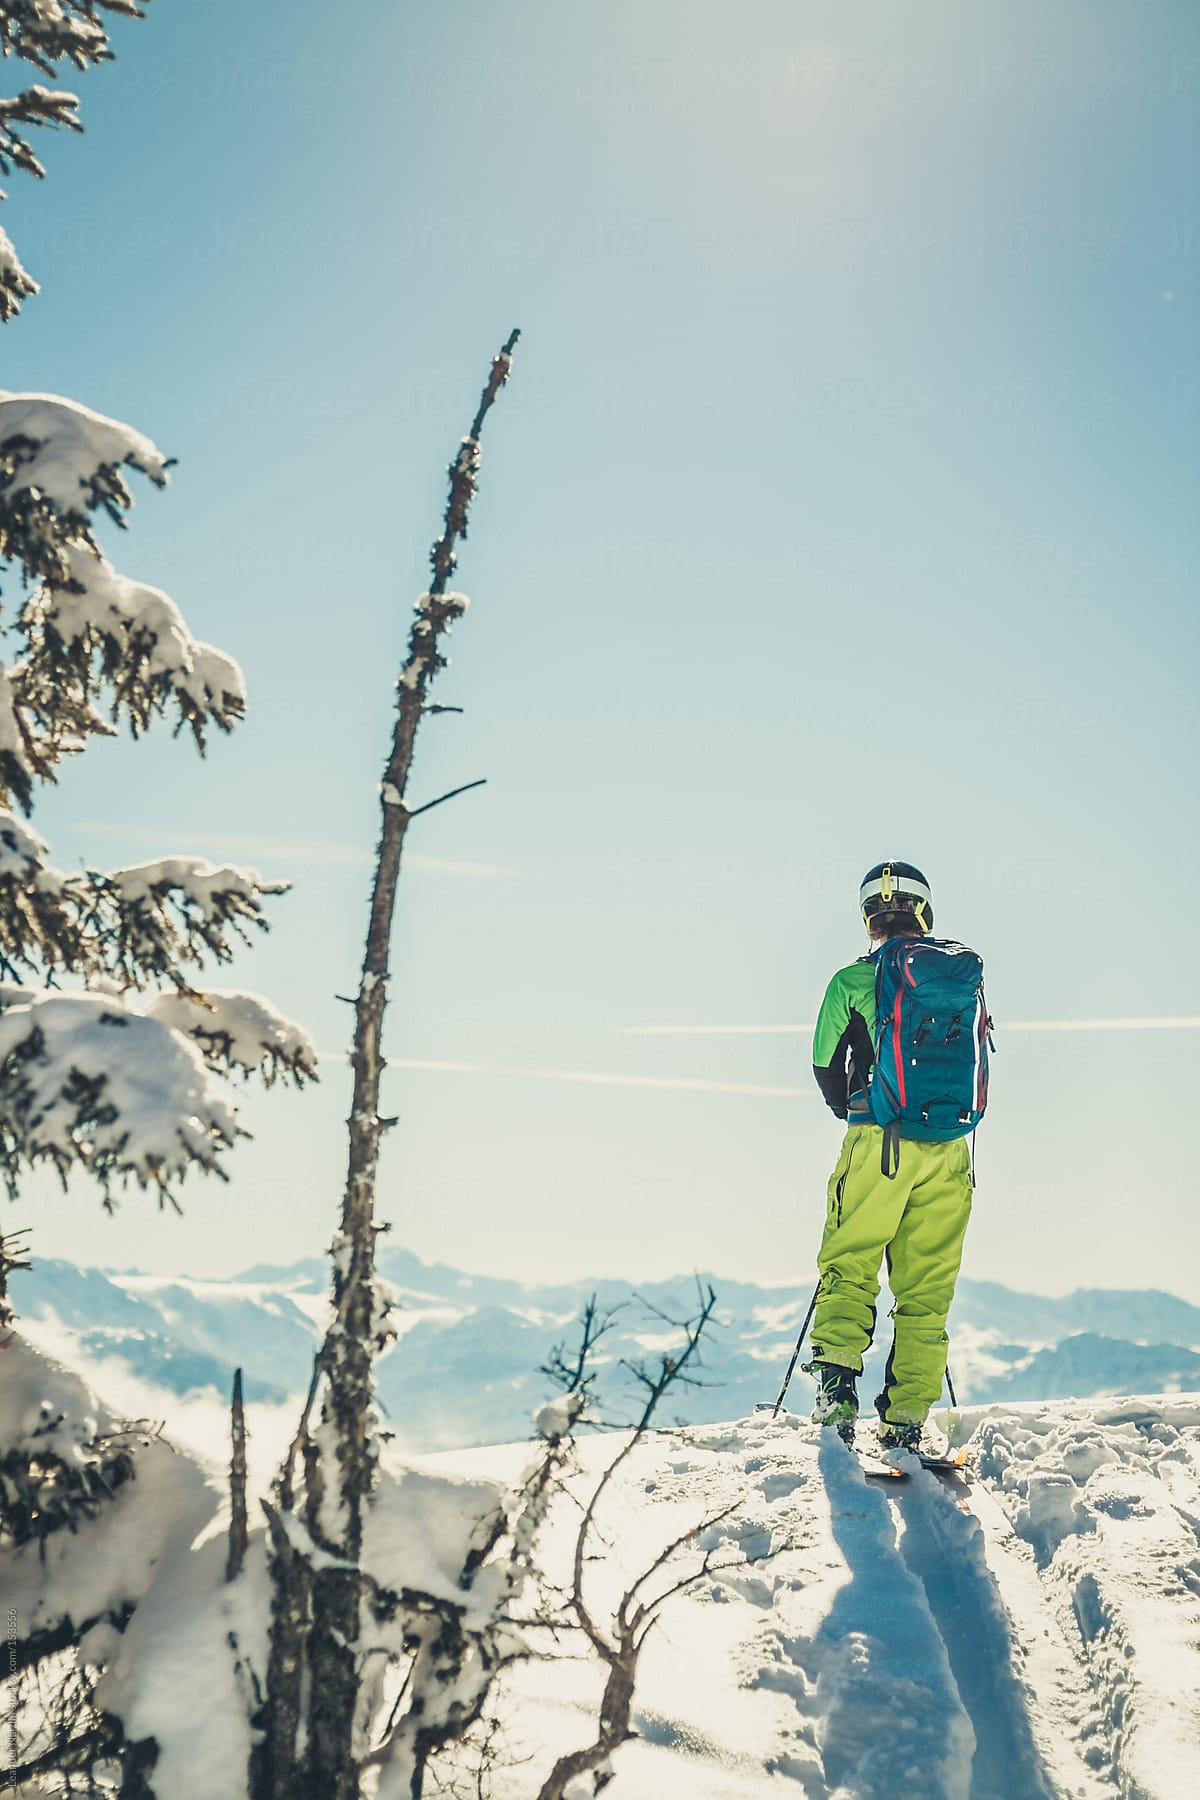 Skier in austian winter  landscape